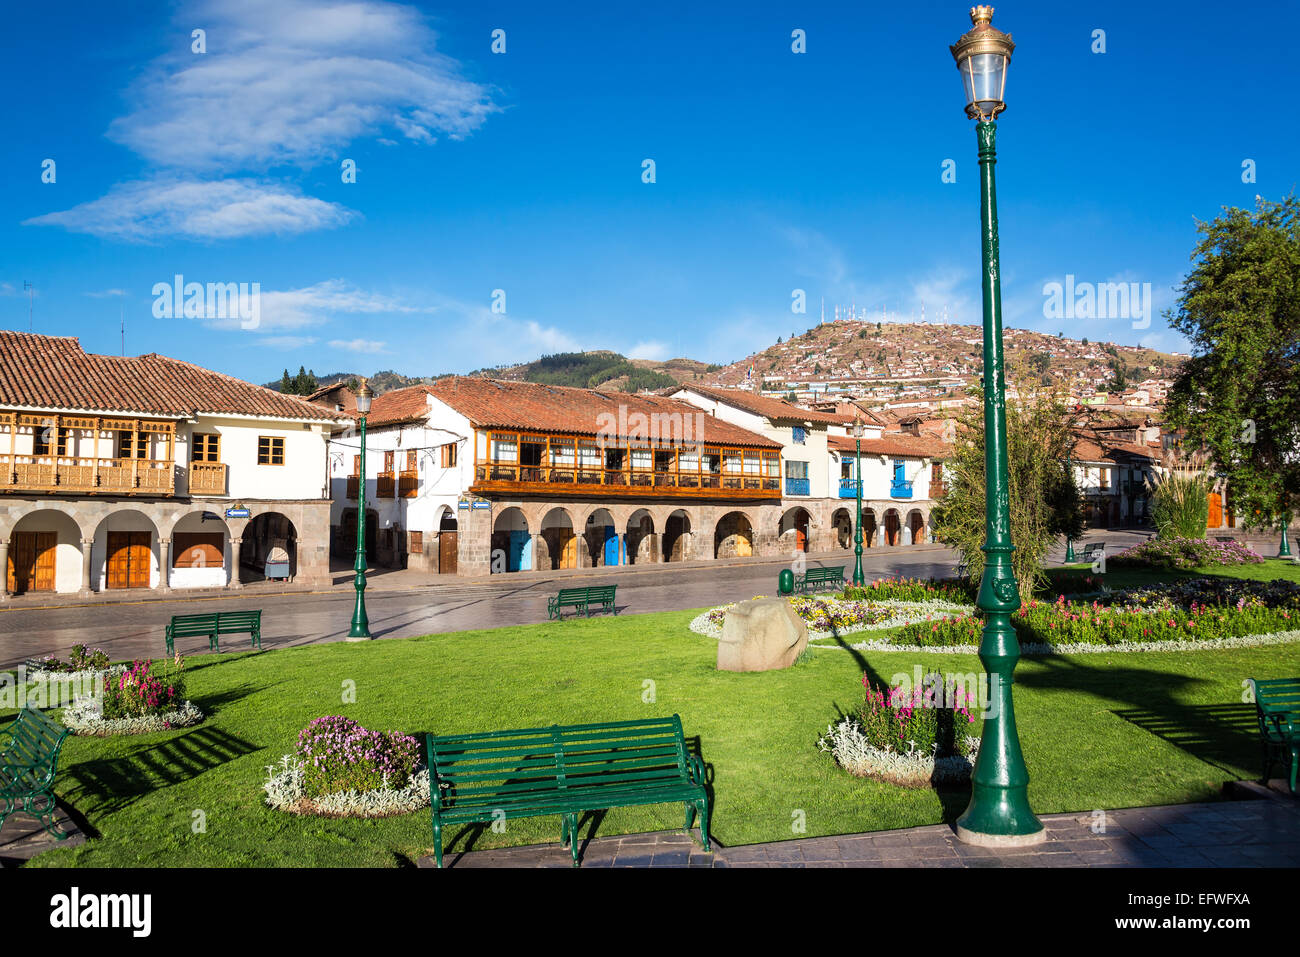 Vue sur la Plaza de Armas de Cusco, Pérou avec belle architecture coloniale visible Banque D'Images